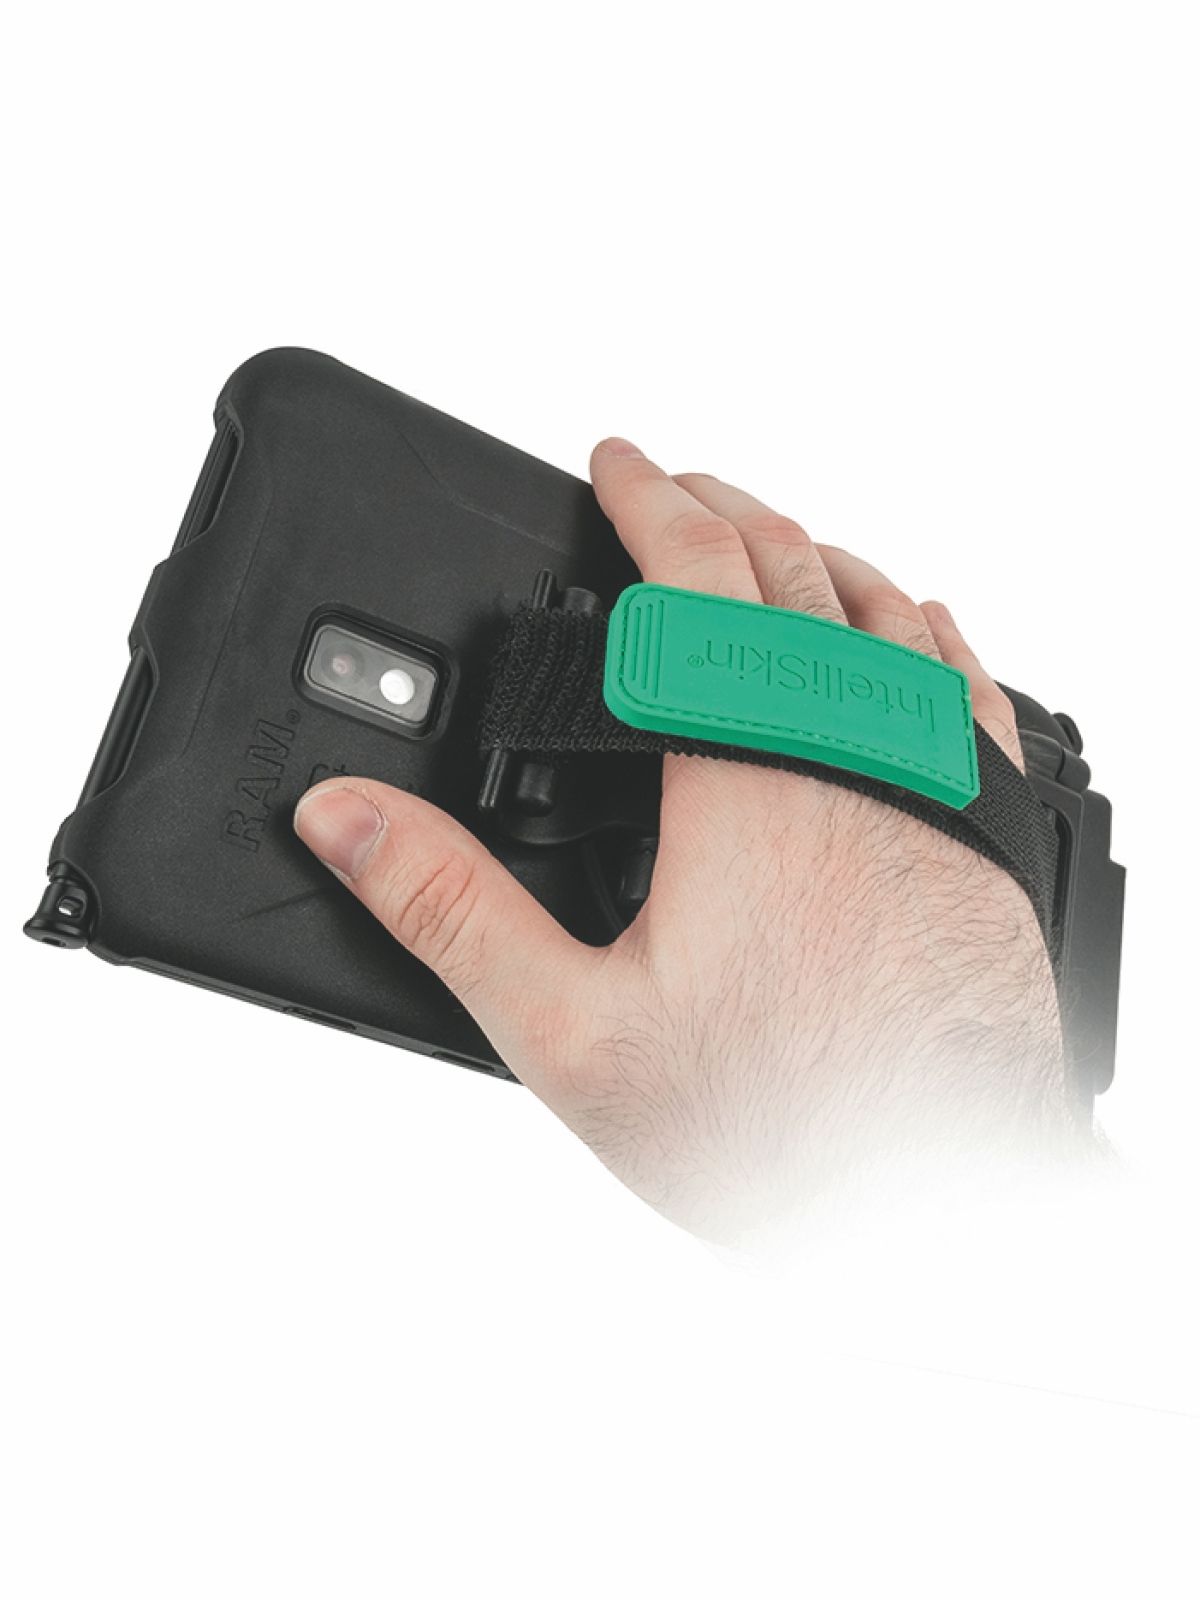 RAM Mounts GDS magnetische Handschlaufe für IntelliSkin Tablet-Lade-/Schutzhüllen - inkl. Standfunktion